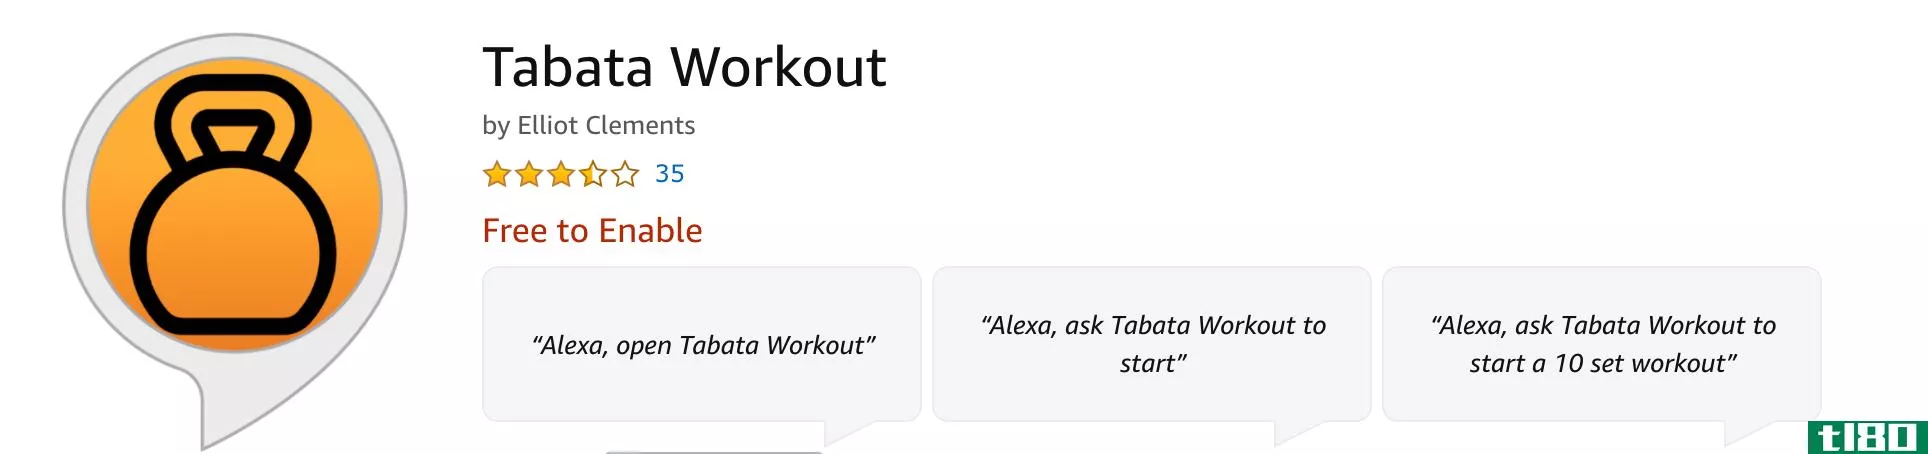 Tabata Workout Alexa